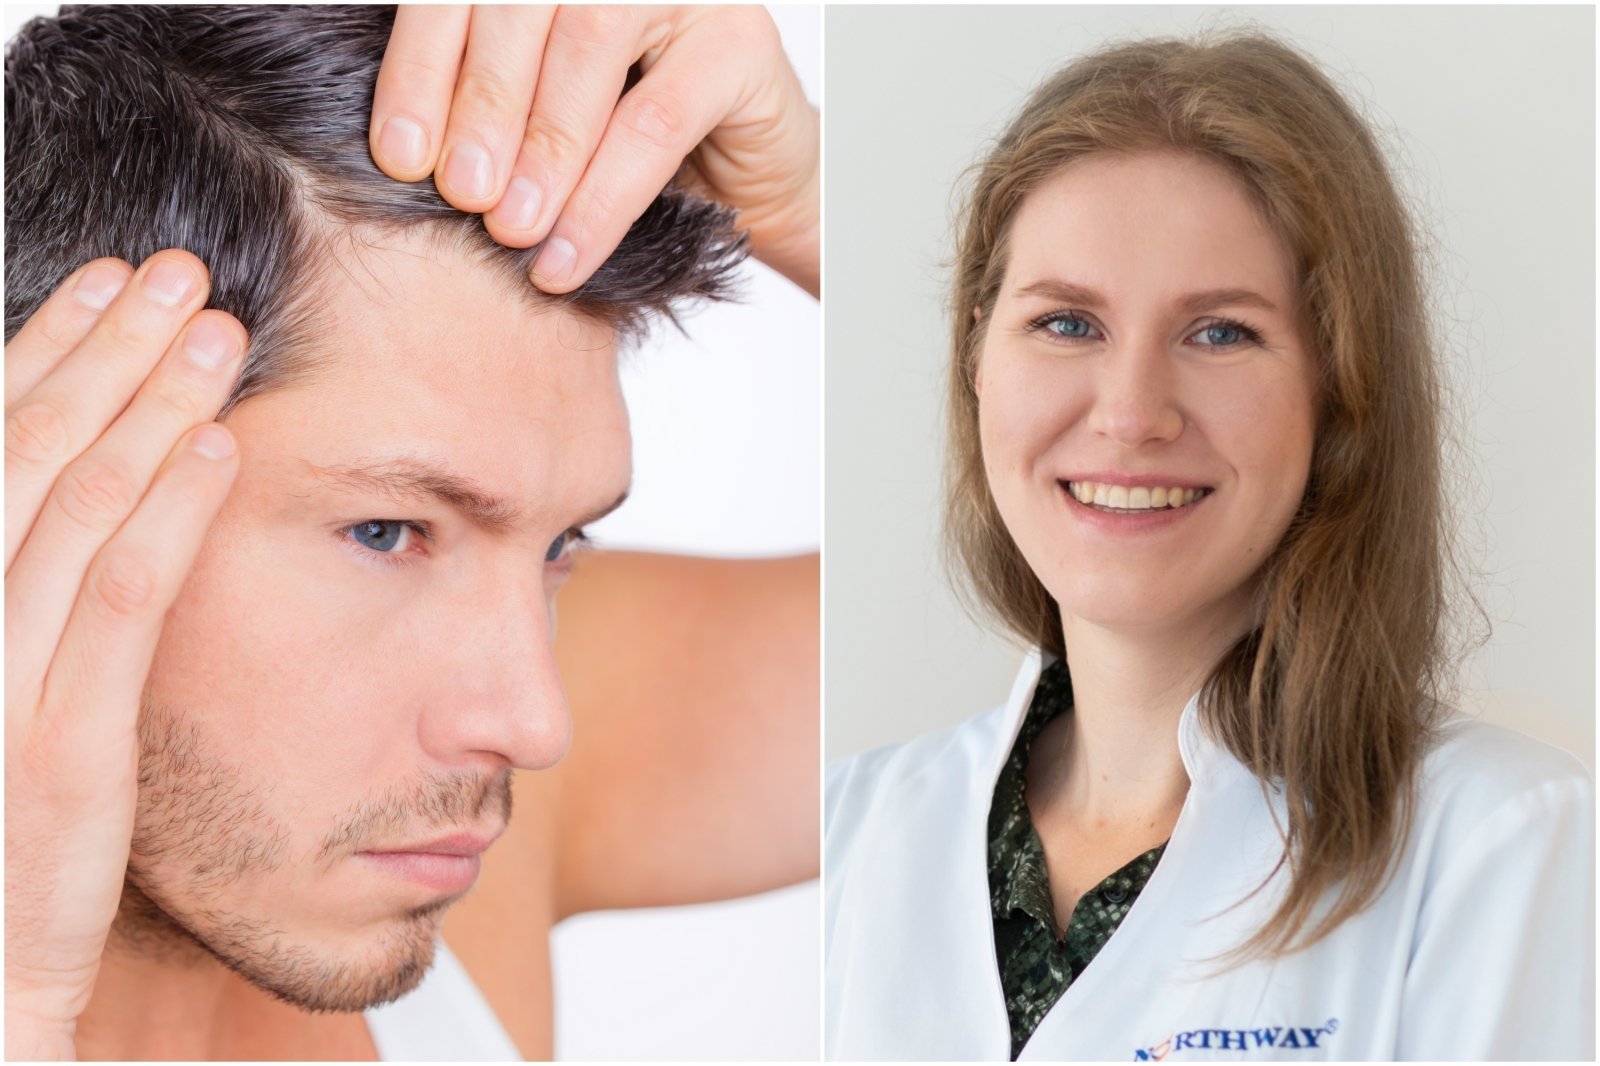 Vyrai pradeda plikti vis jaunesni: gydytoja atsakė, ar verta naudoti priemones nuo plaukų slinkimo